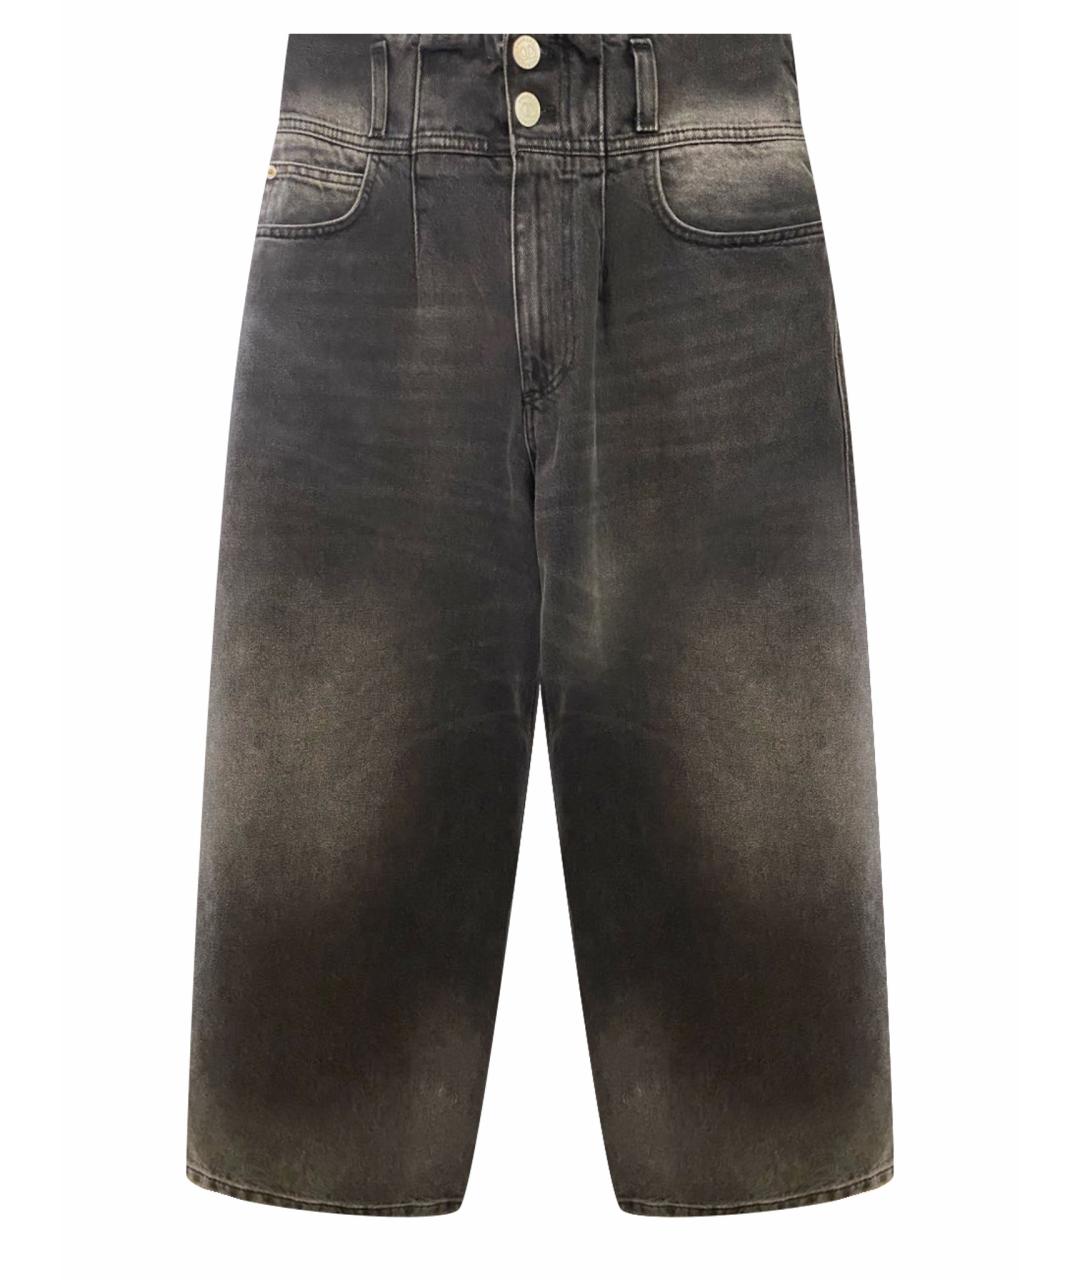 TWIN-SET Мульти хлопко-полиэстеровые джинсы клеш, фото 1